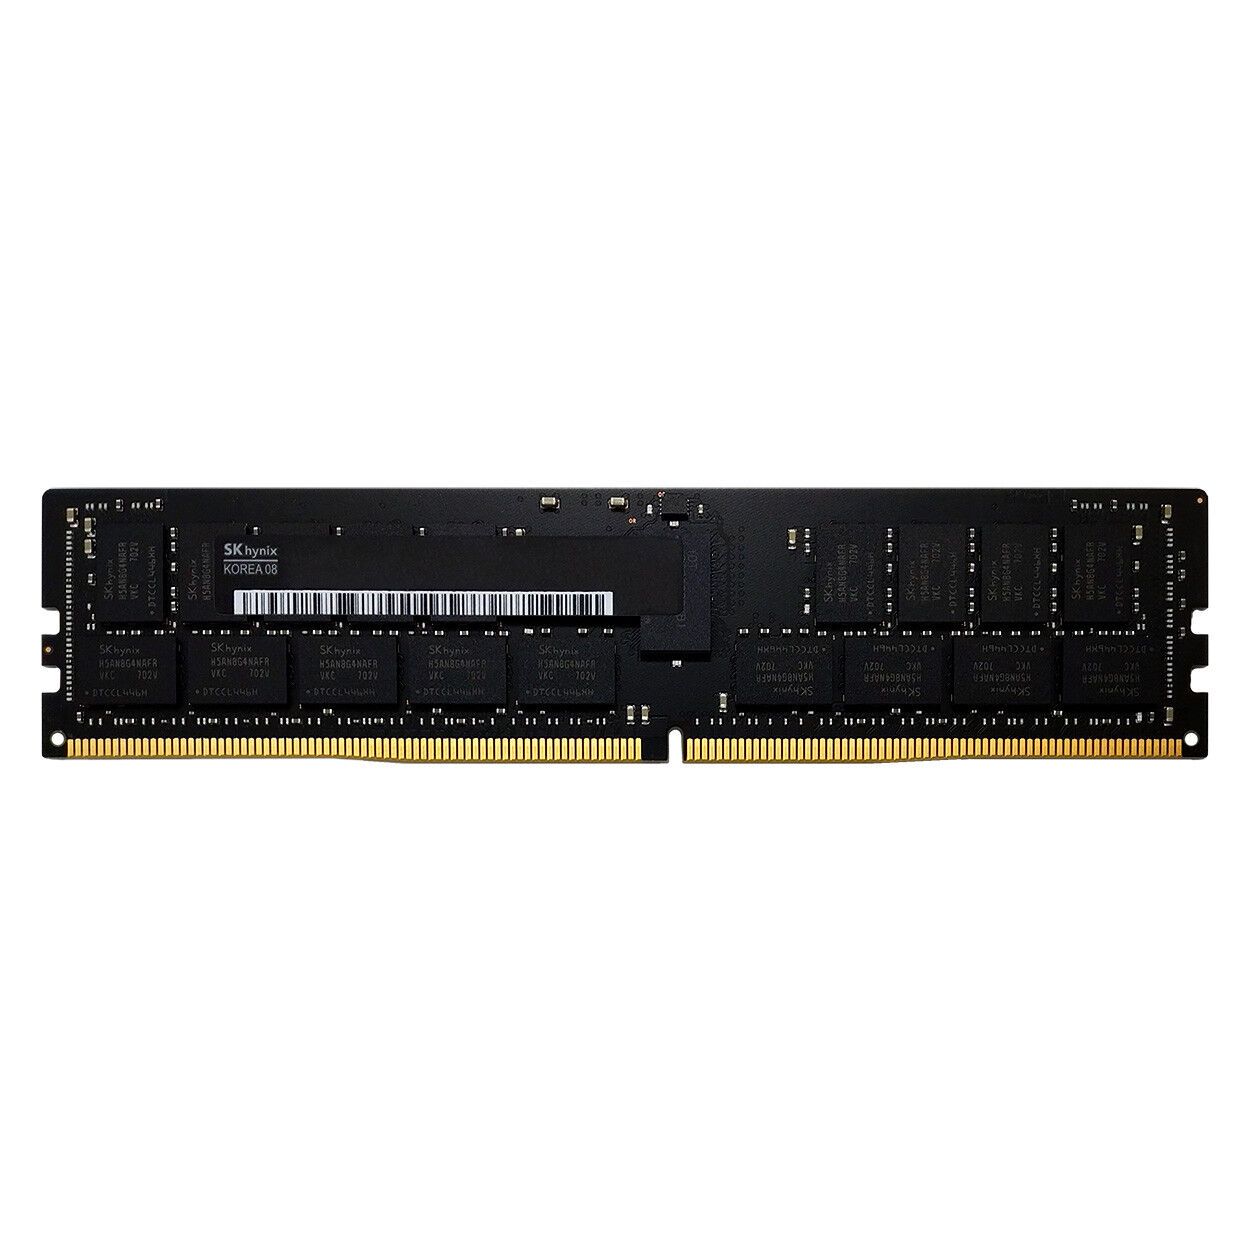 HYNIX HMA84GR7AFR4N-VK 32GB 2Rx4 DDR4 21300 PC4-2666-R ECC REGISTERED MEMORY RAM